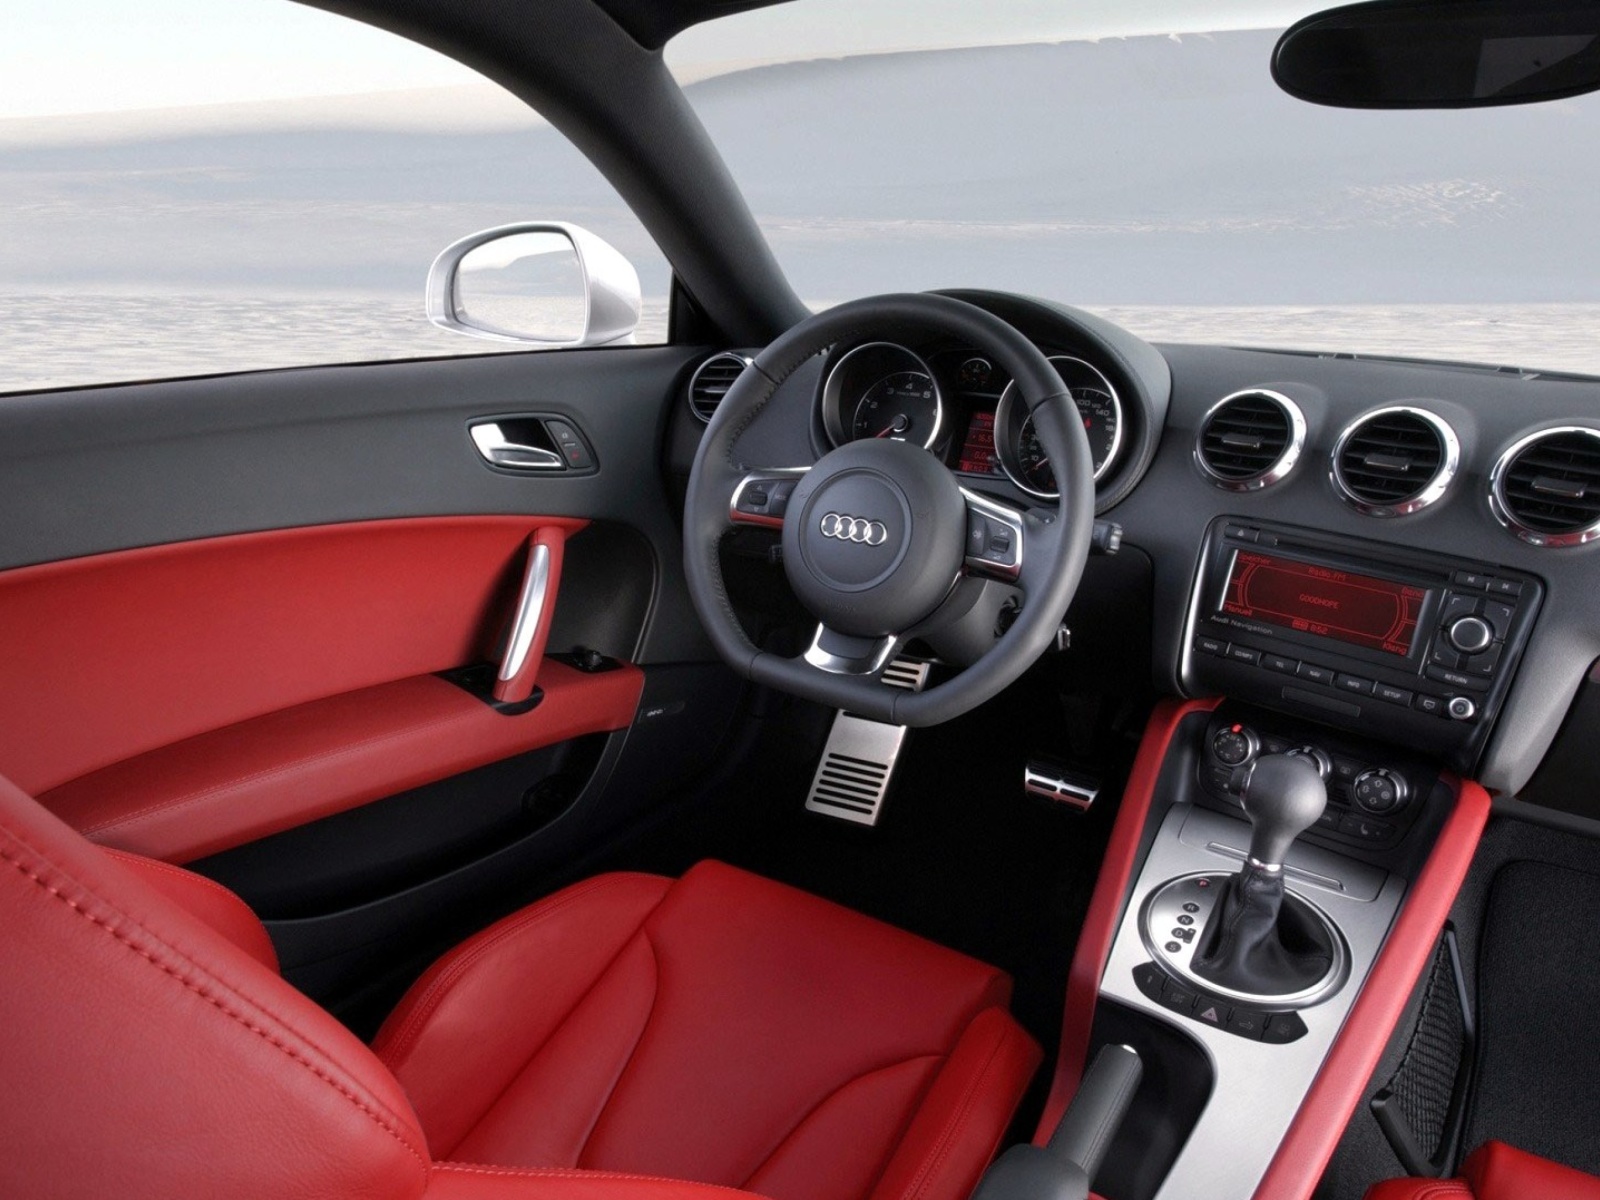 Audi TT 3 2 Quattro Interior screenshot #1 1600x1200